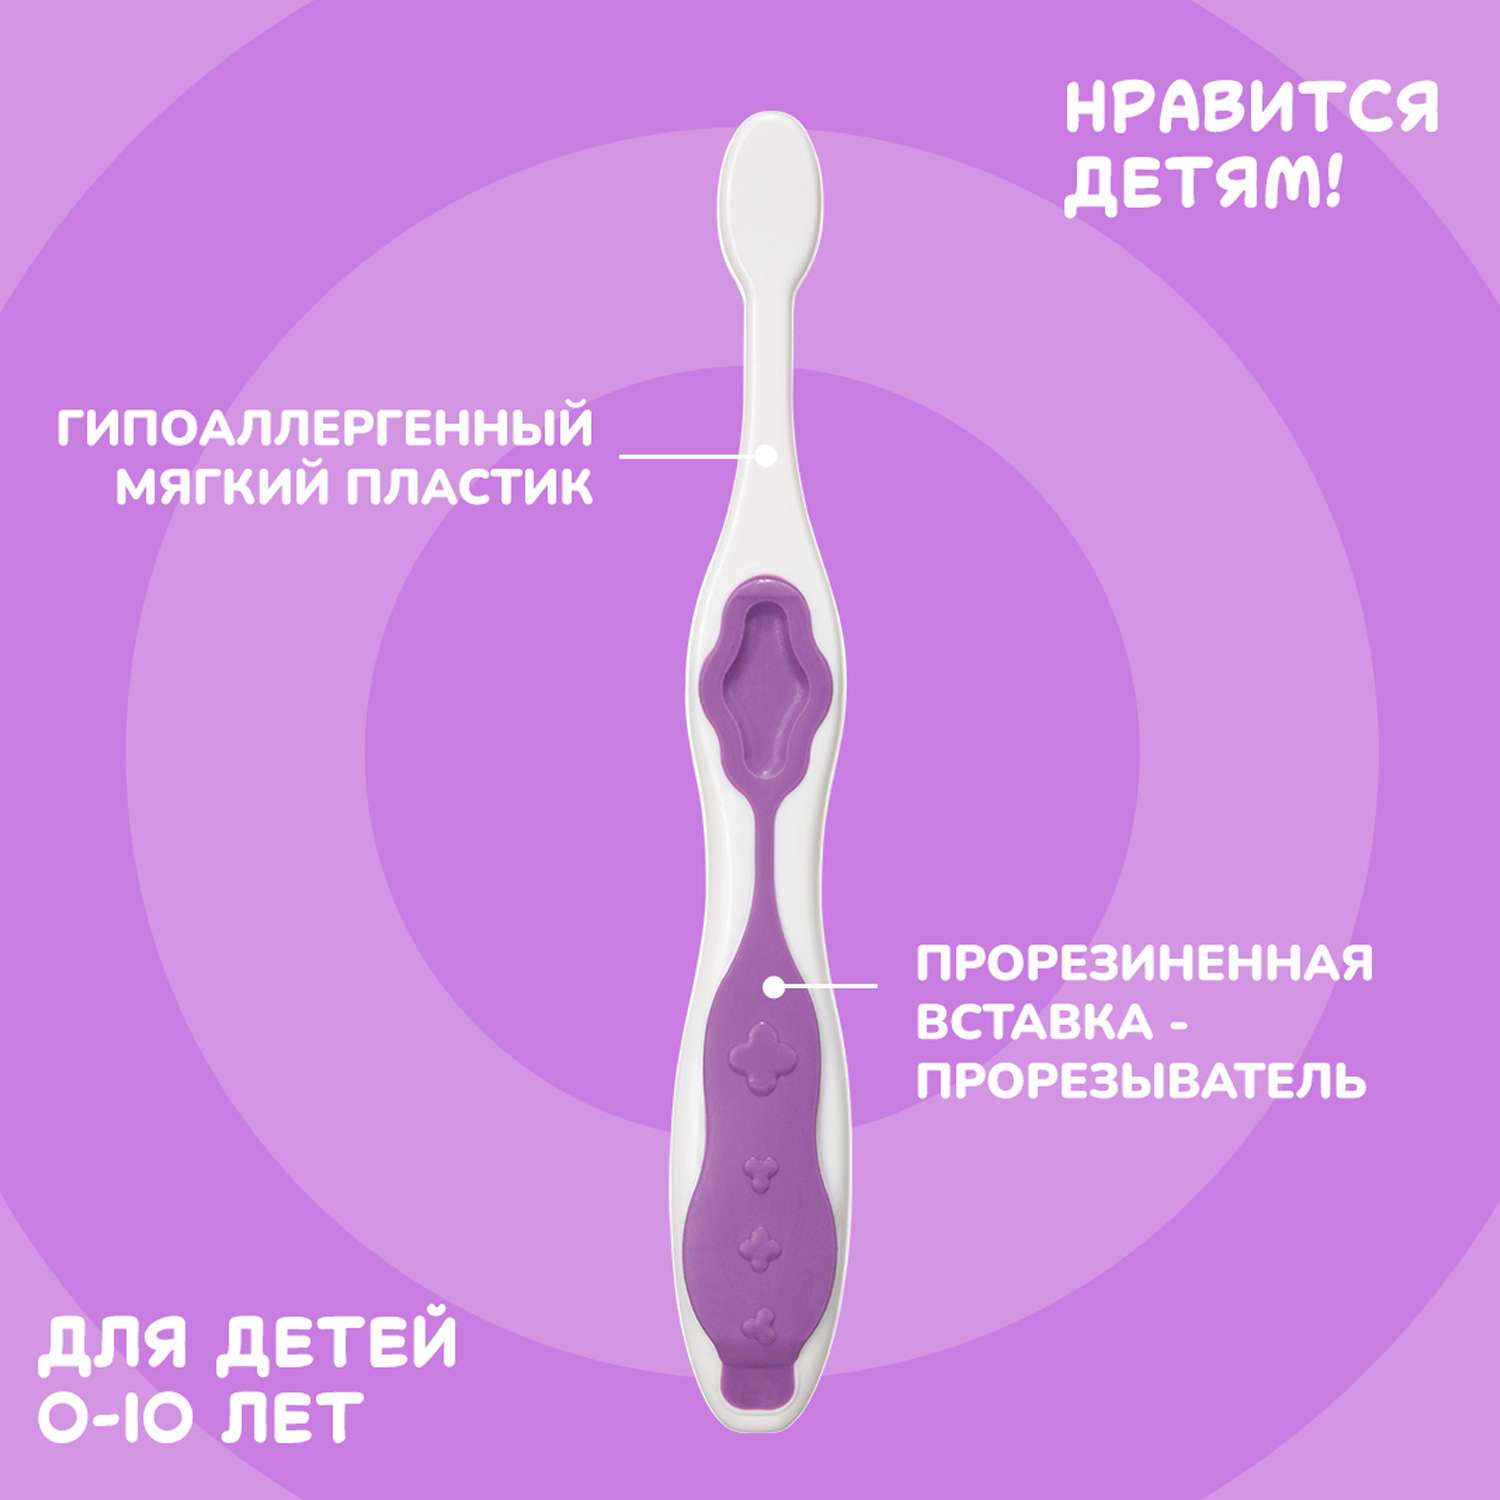 Подарочный набор Montcarotte гелеообразная зубная паста Ягодка Вишня + Зубная щетка Фиолетовая - фото 14